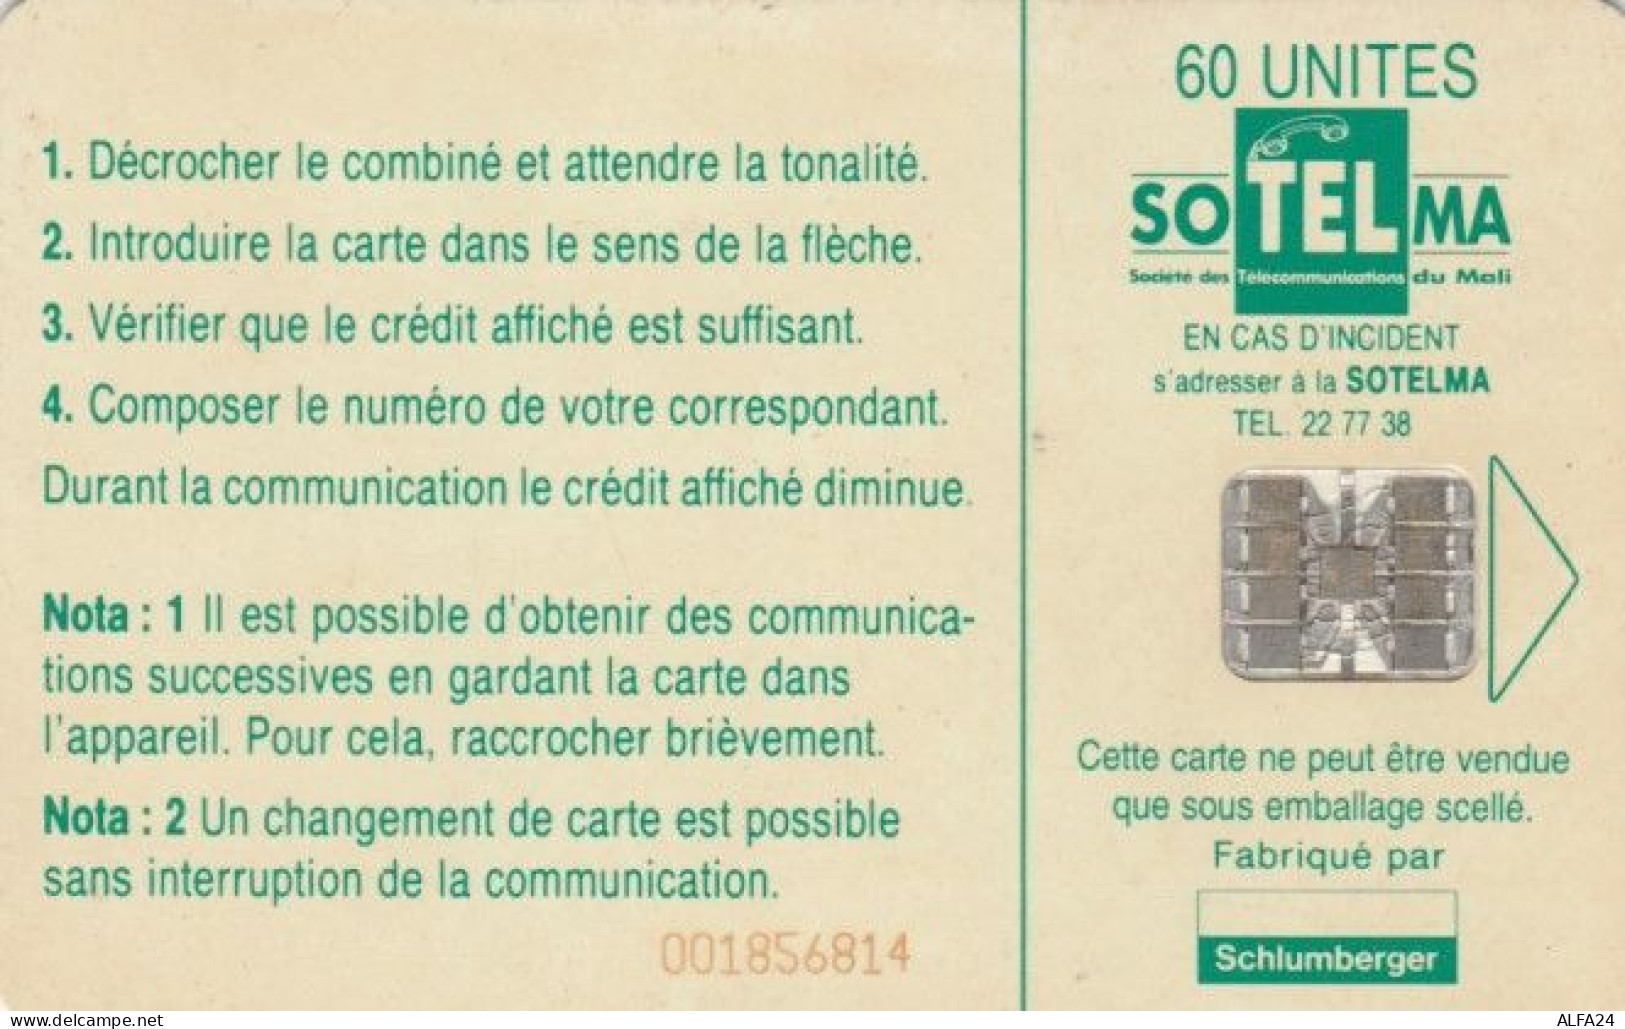 PHONE CARD MALI (PY922 - Mali